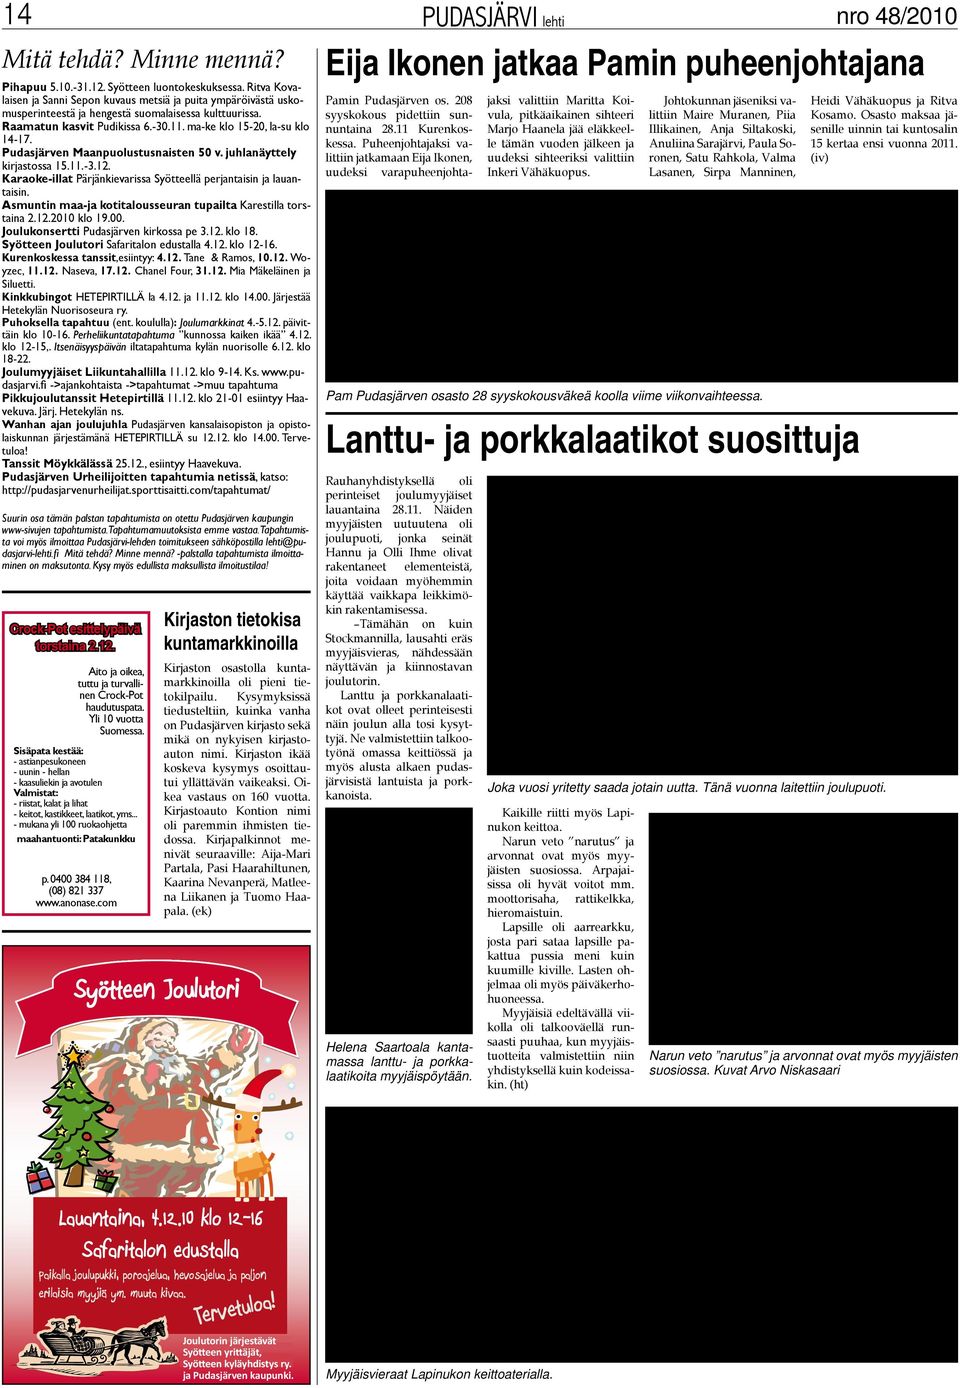 Pudasjärven Maanpuolustusnaisten 50 v. juhlanäyttely kirjastossa 15.11.-3.12. Karaoke-illat Pärjänkievarissa Syötteellä perjantaisin ja lauantaisin.